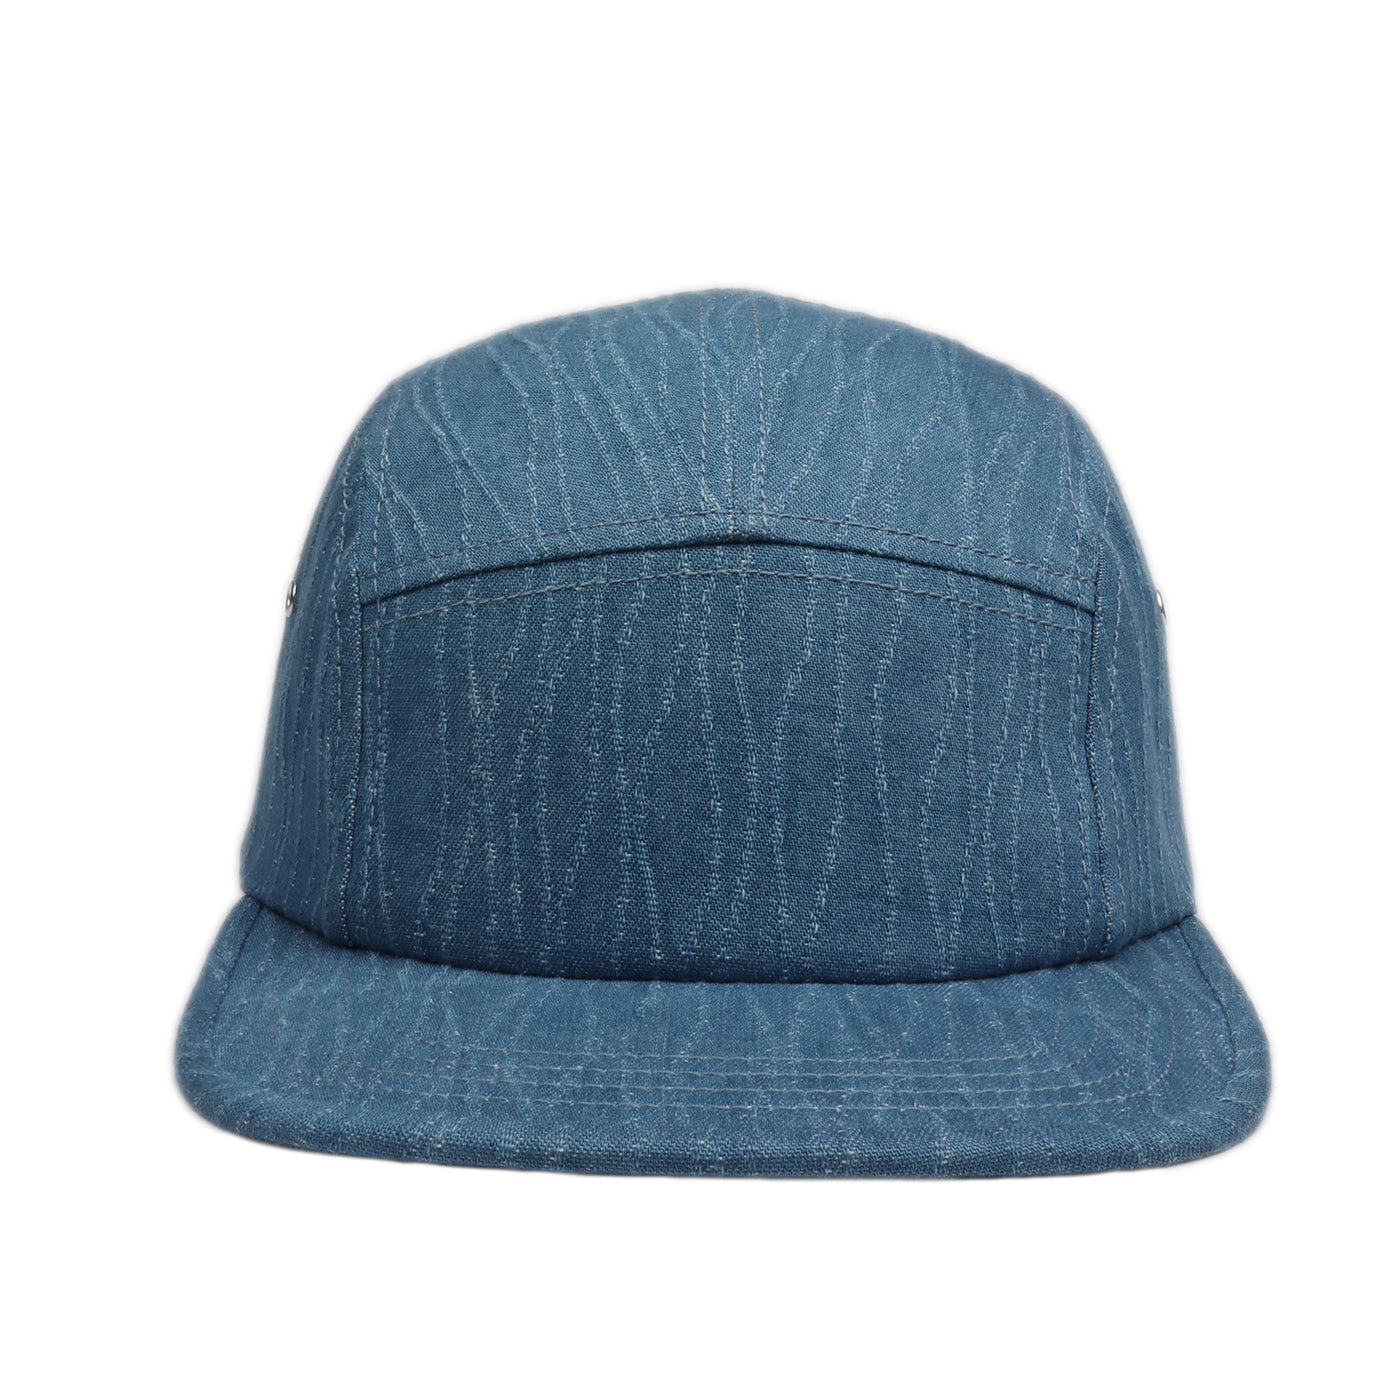 Hatphile Washed Denim 5 Panel Hat Camper Hat